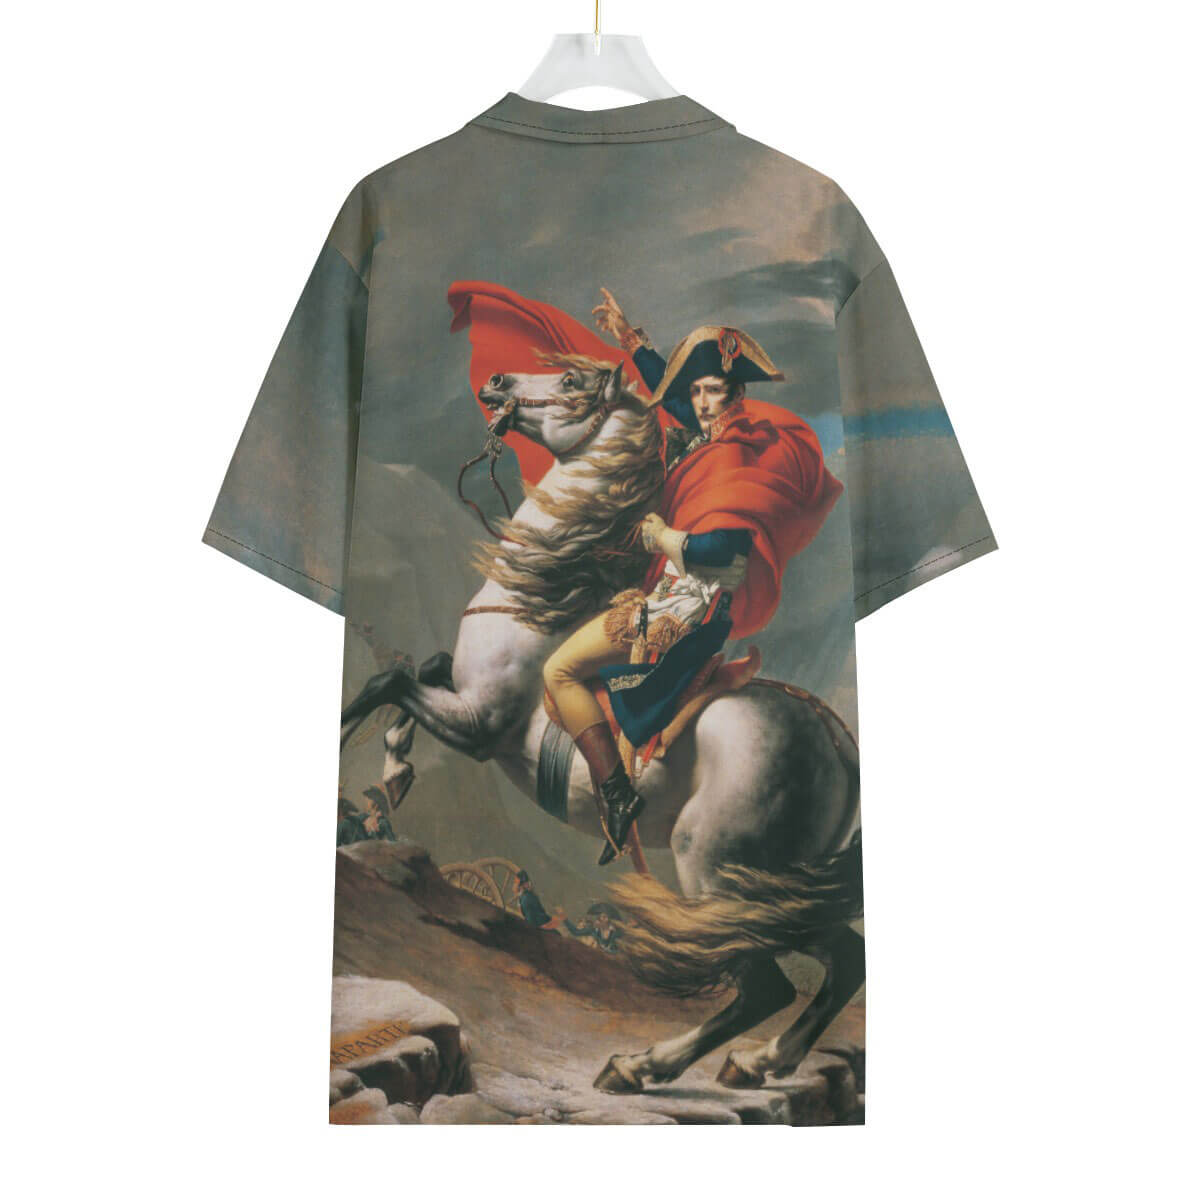 Man wearing Napoleon-inspired art Hawaiian shirt